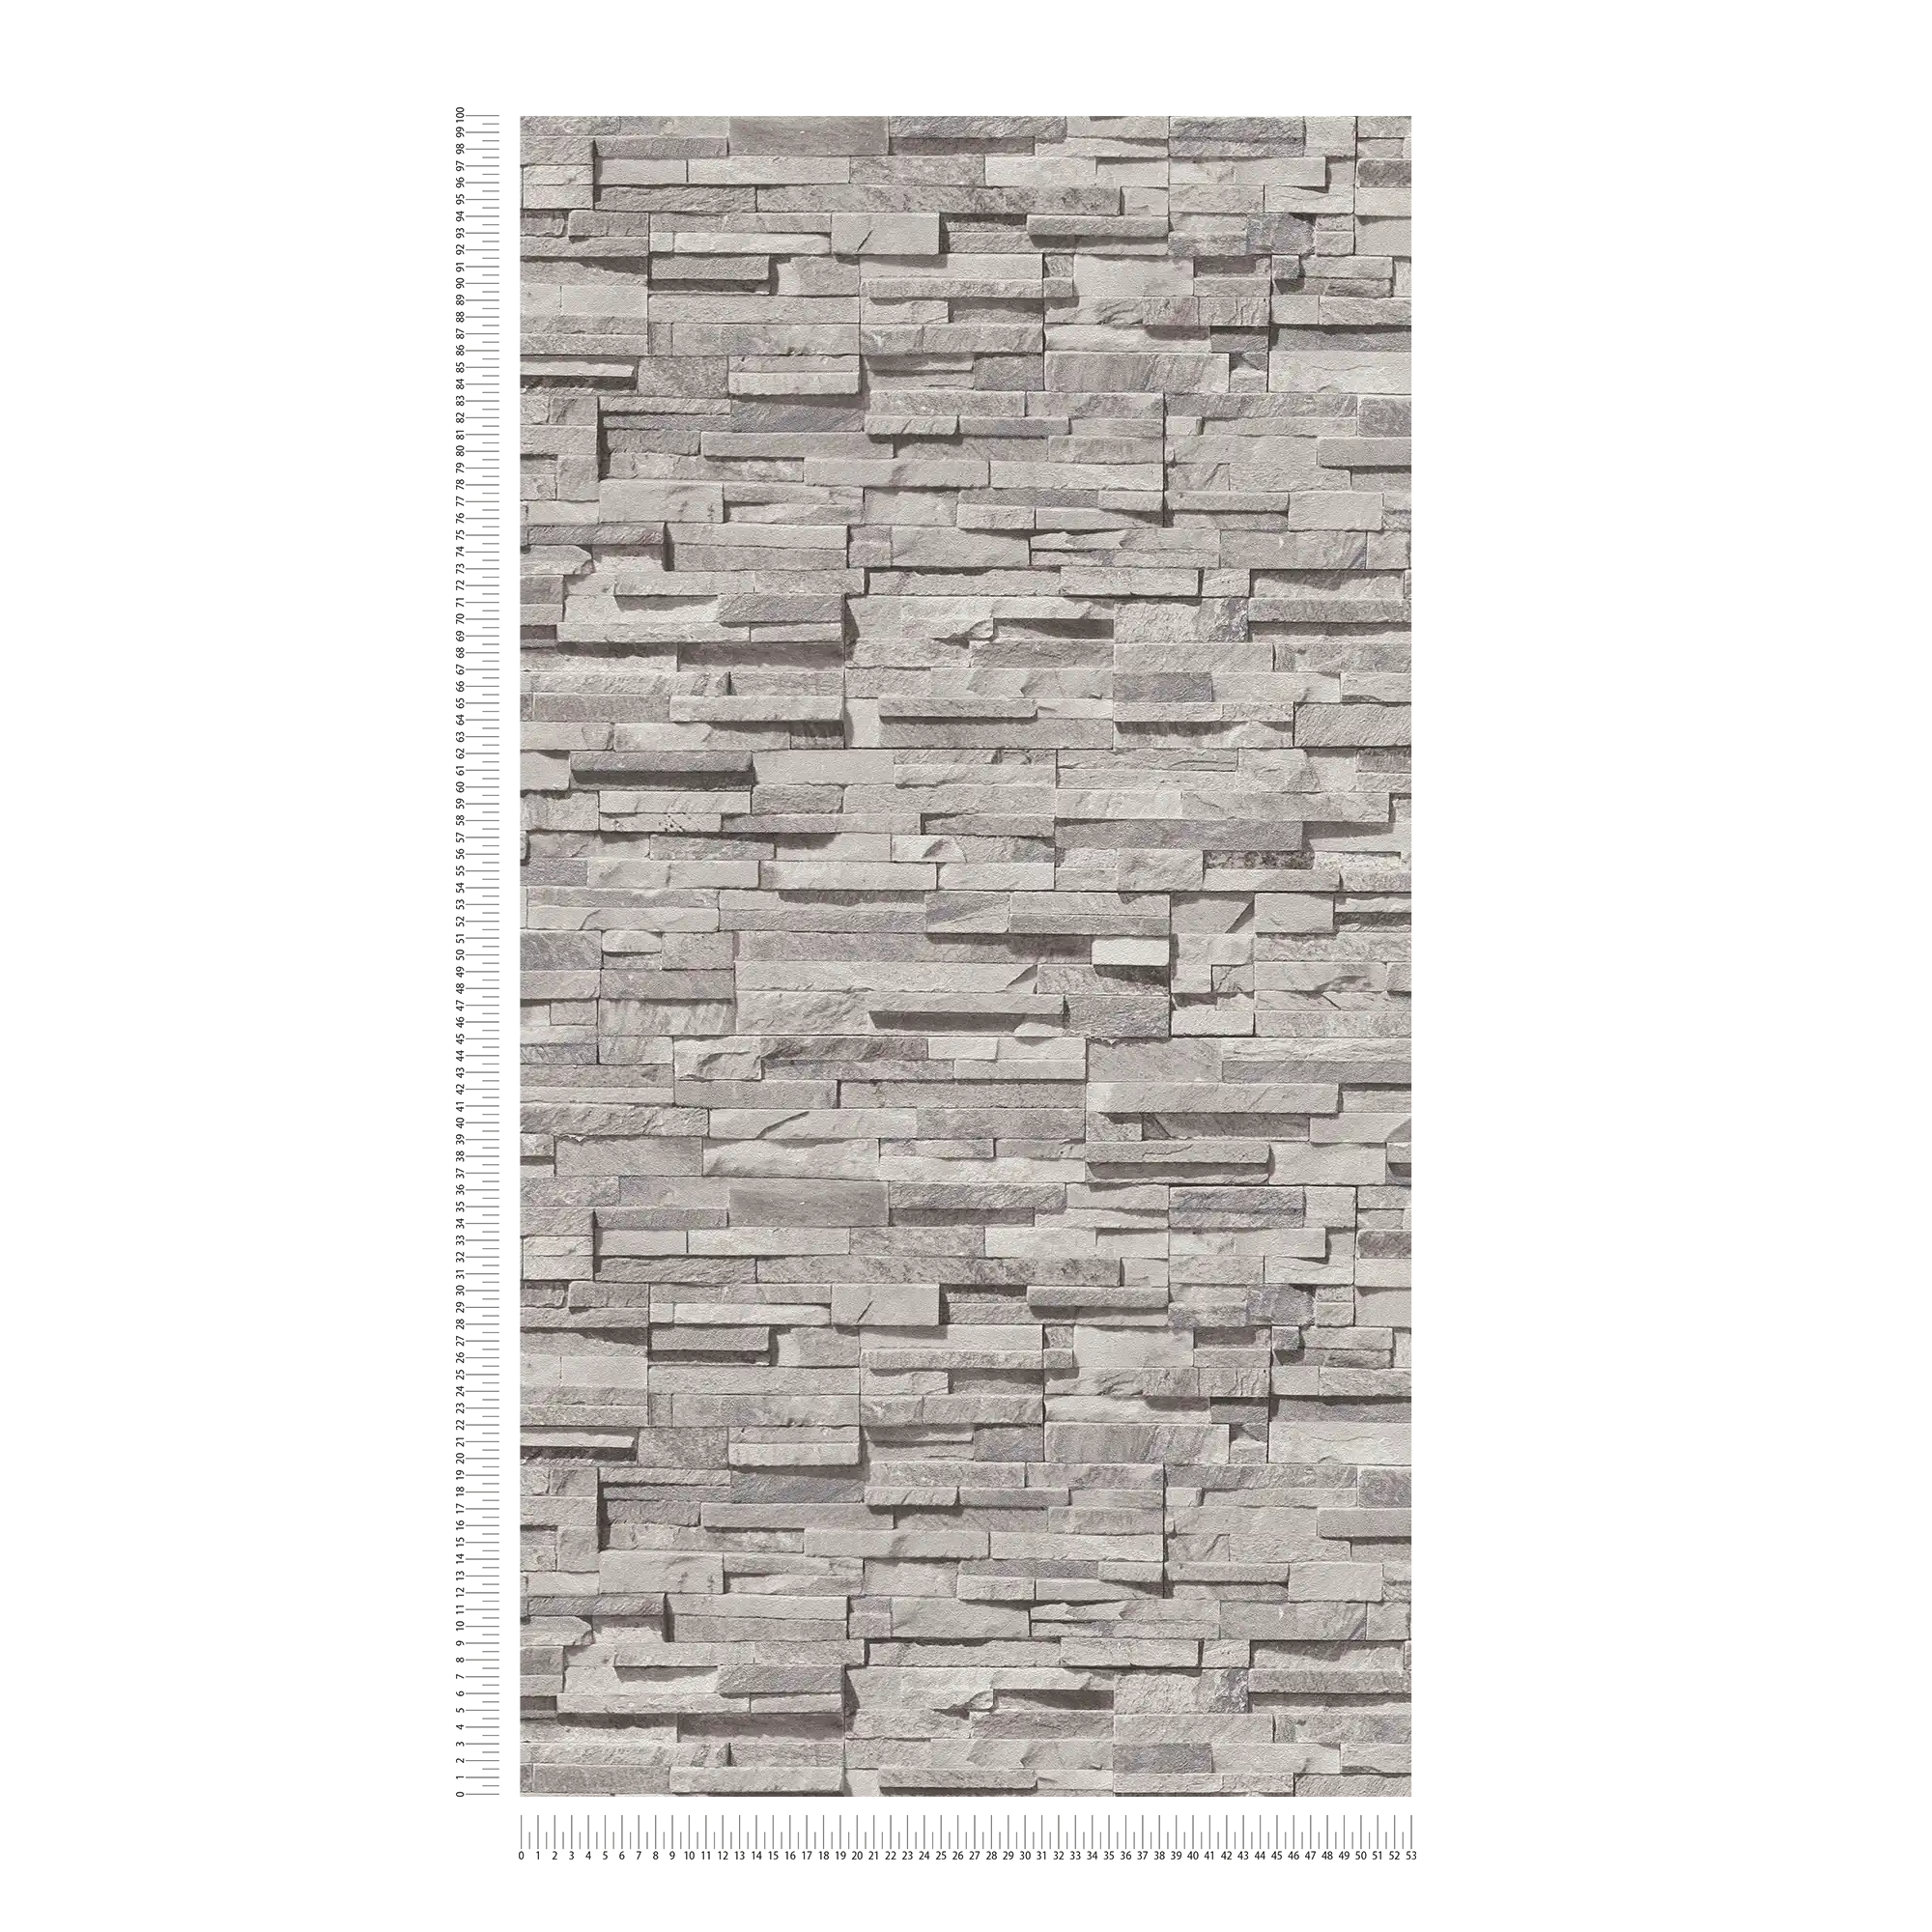             Carta da parati in tessuto non tessuto effetto pietra con motivo lucido - grigio chiaro, beige, argento
        